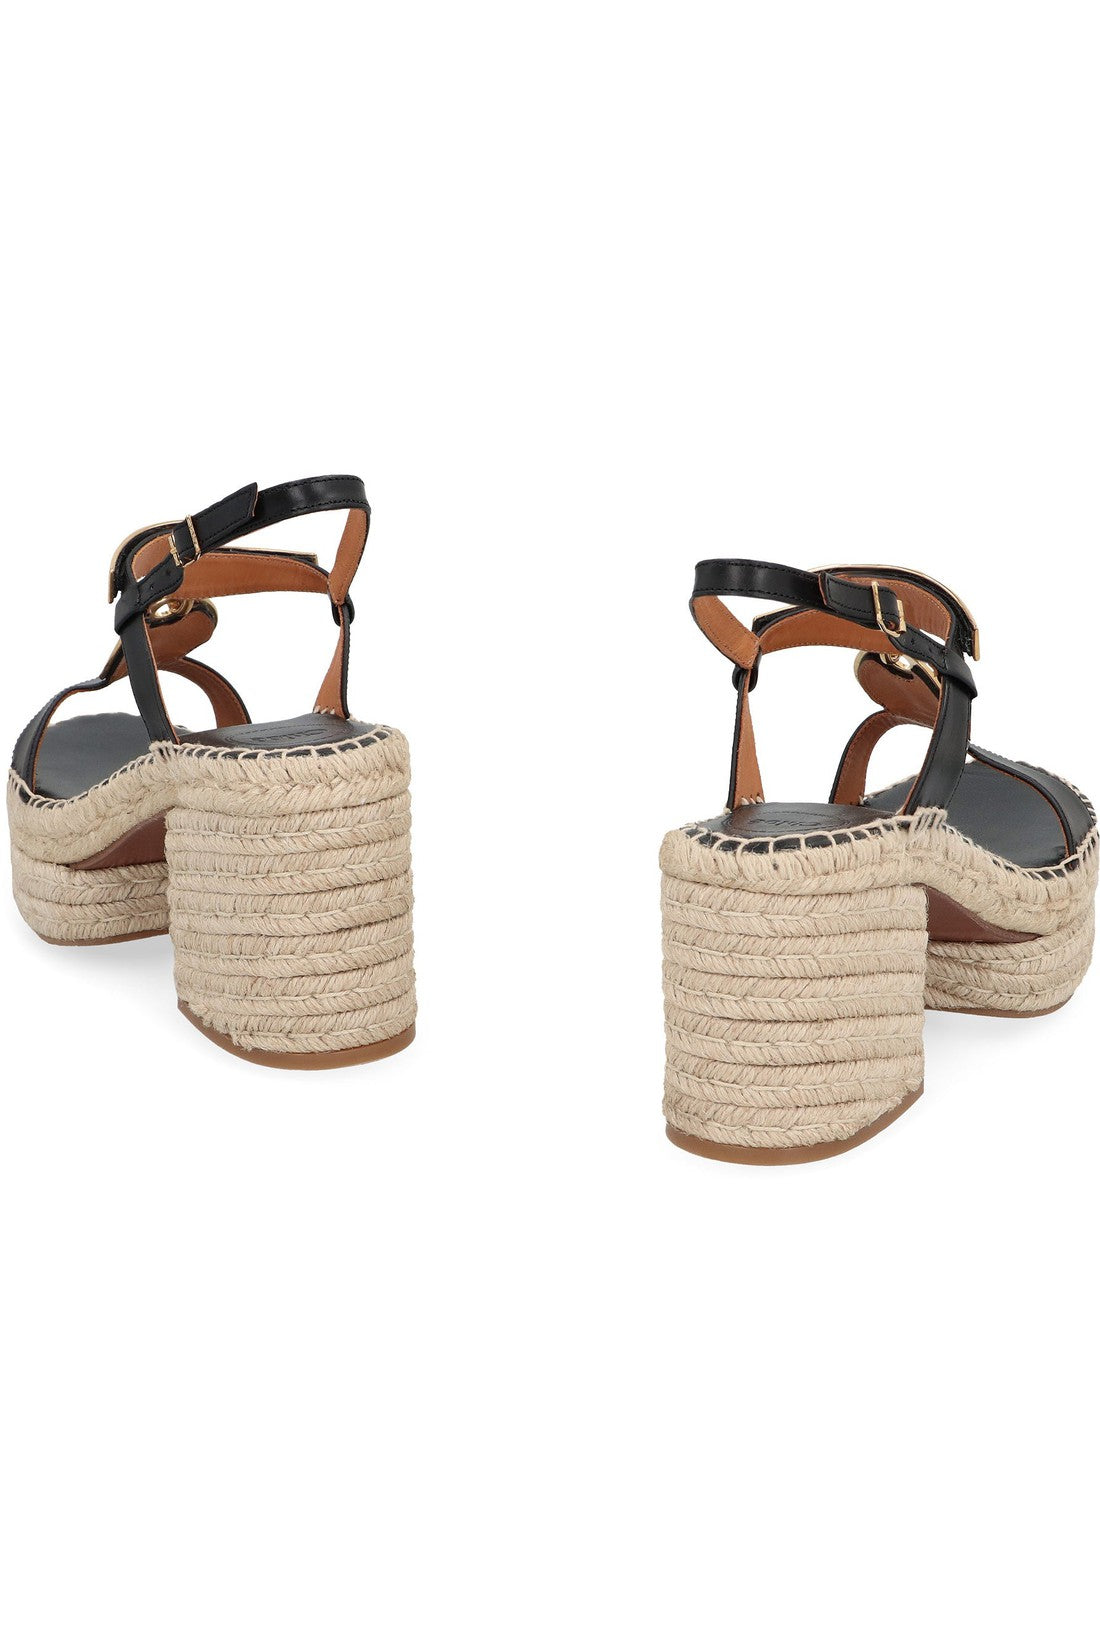 Chloé-OUTLET-SALE-Leather espadrille sandals-ARCHIVIST